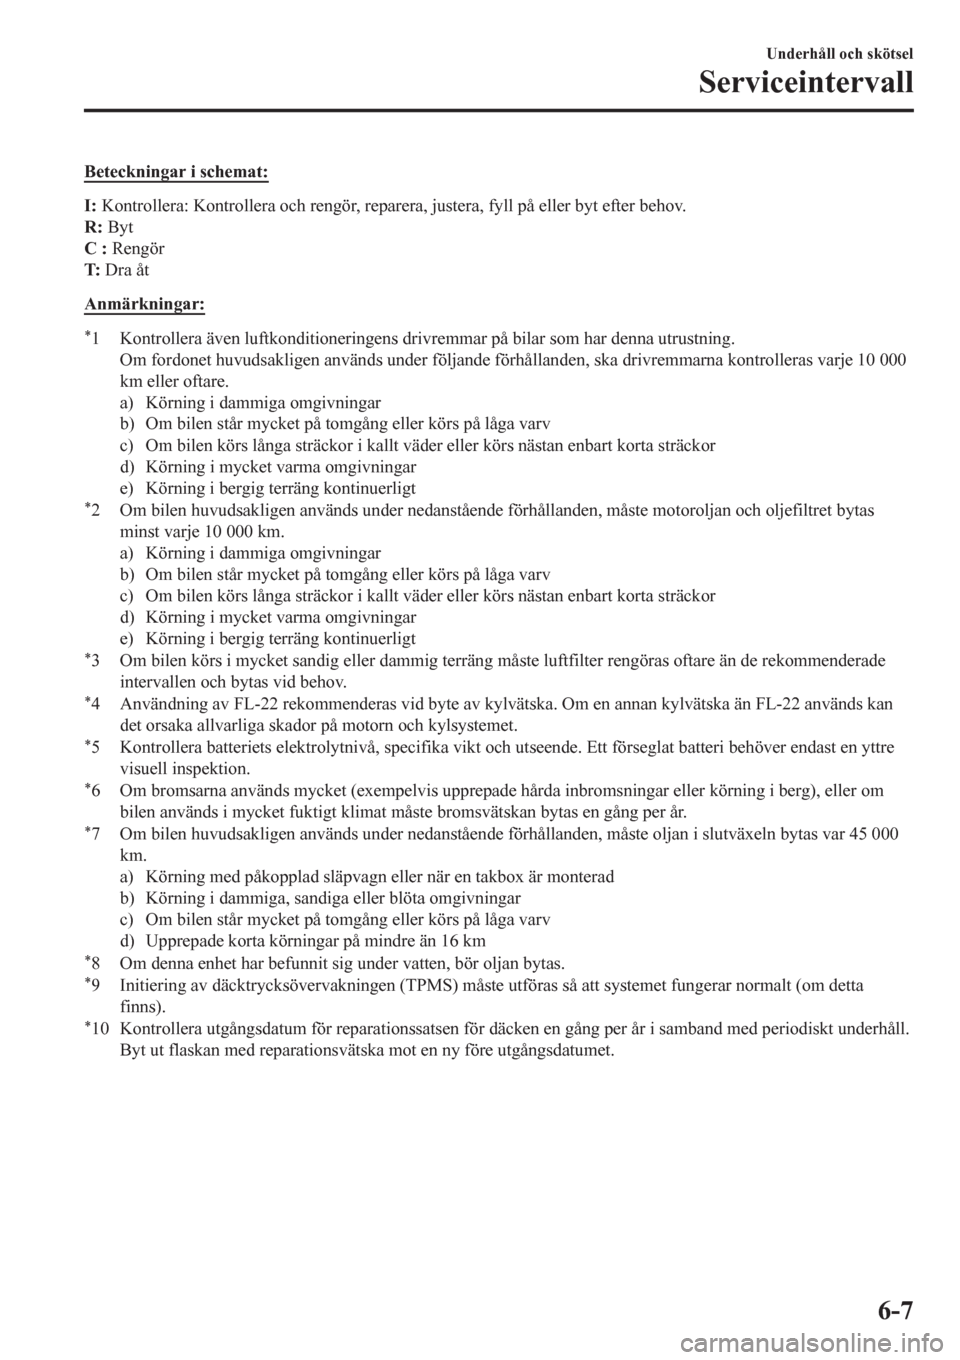 MAZDA MODEL CX-3 2016  Ägarmanual (in Swedish) Beteckningar i schemat:
I: Kontrollera: Kontrollera och rengör, reparera, justera, fyll på eller byt efter behov.
R: Byt
C : Rengör
T: Dra åt
Anmärkningar:
*1 Kontrollera även luftkonditionering